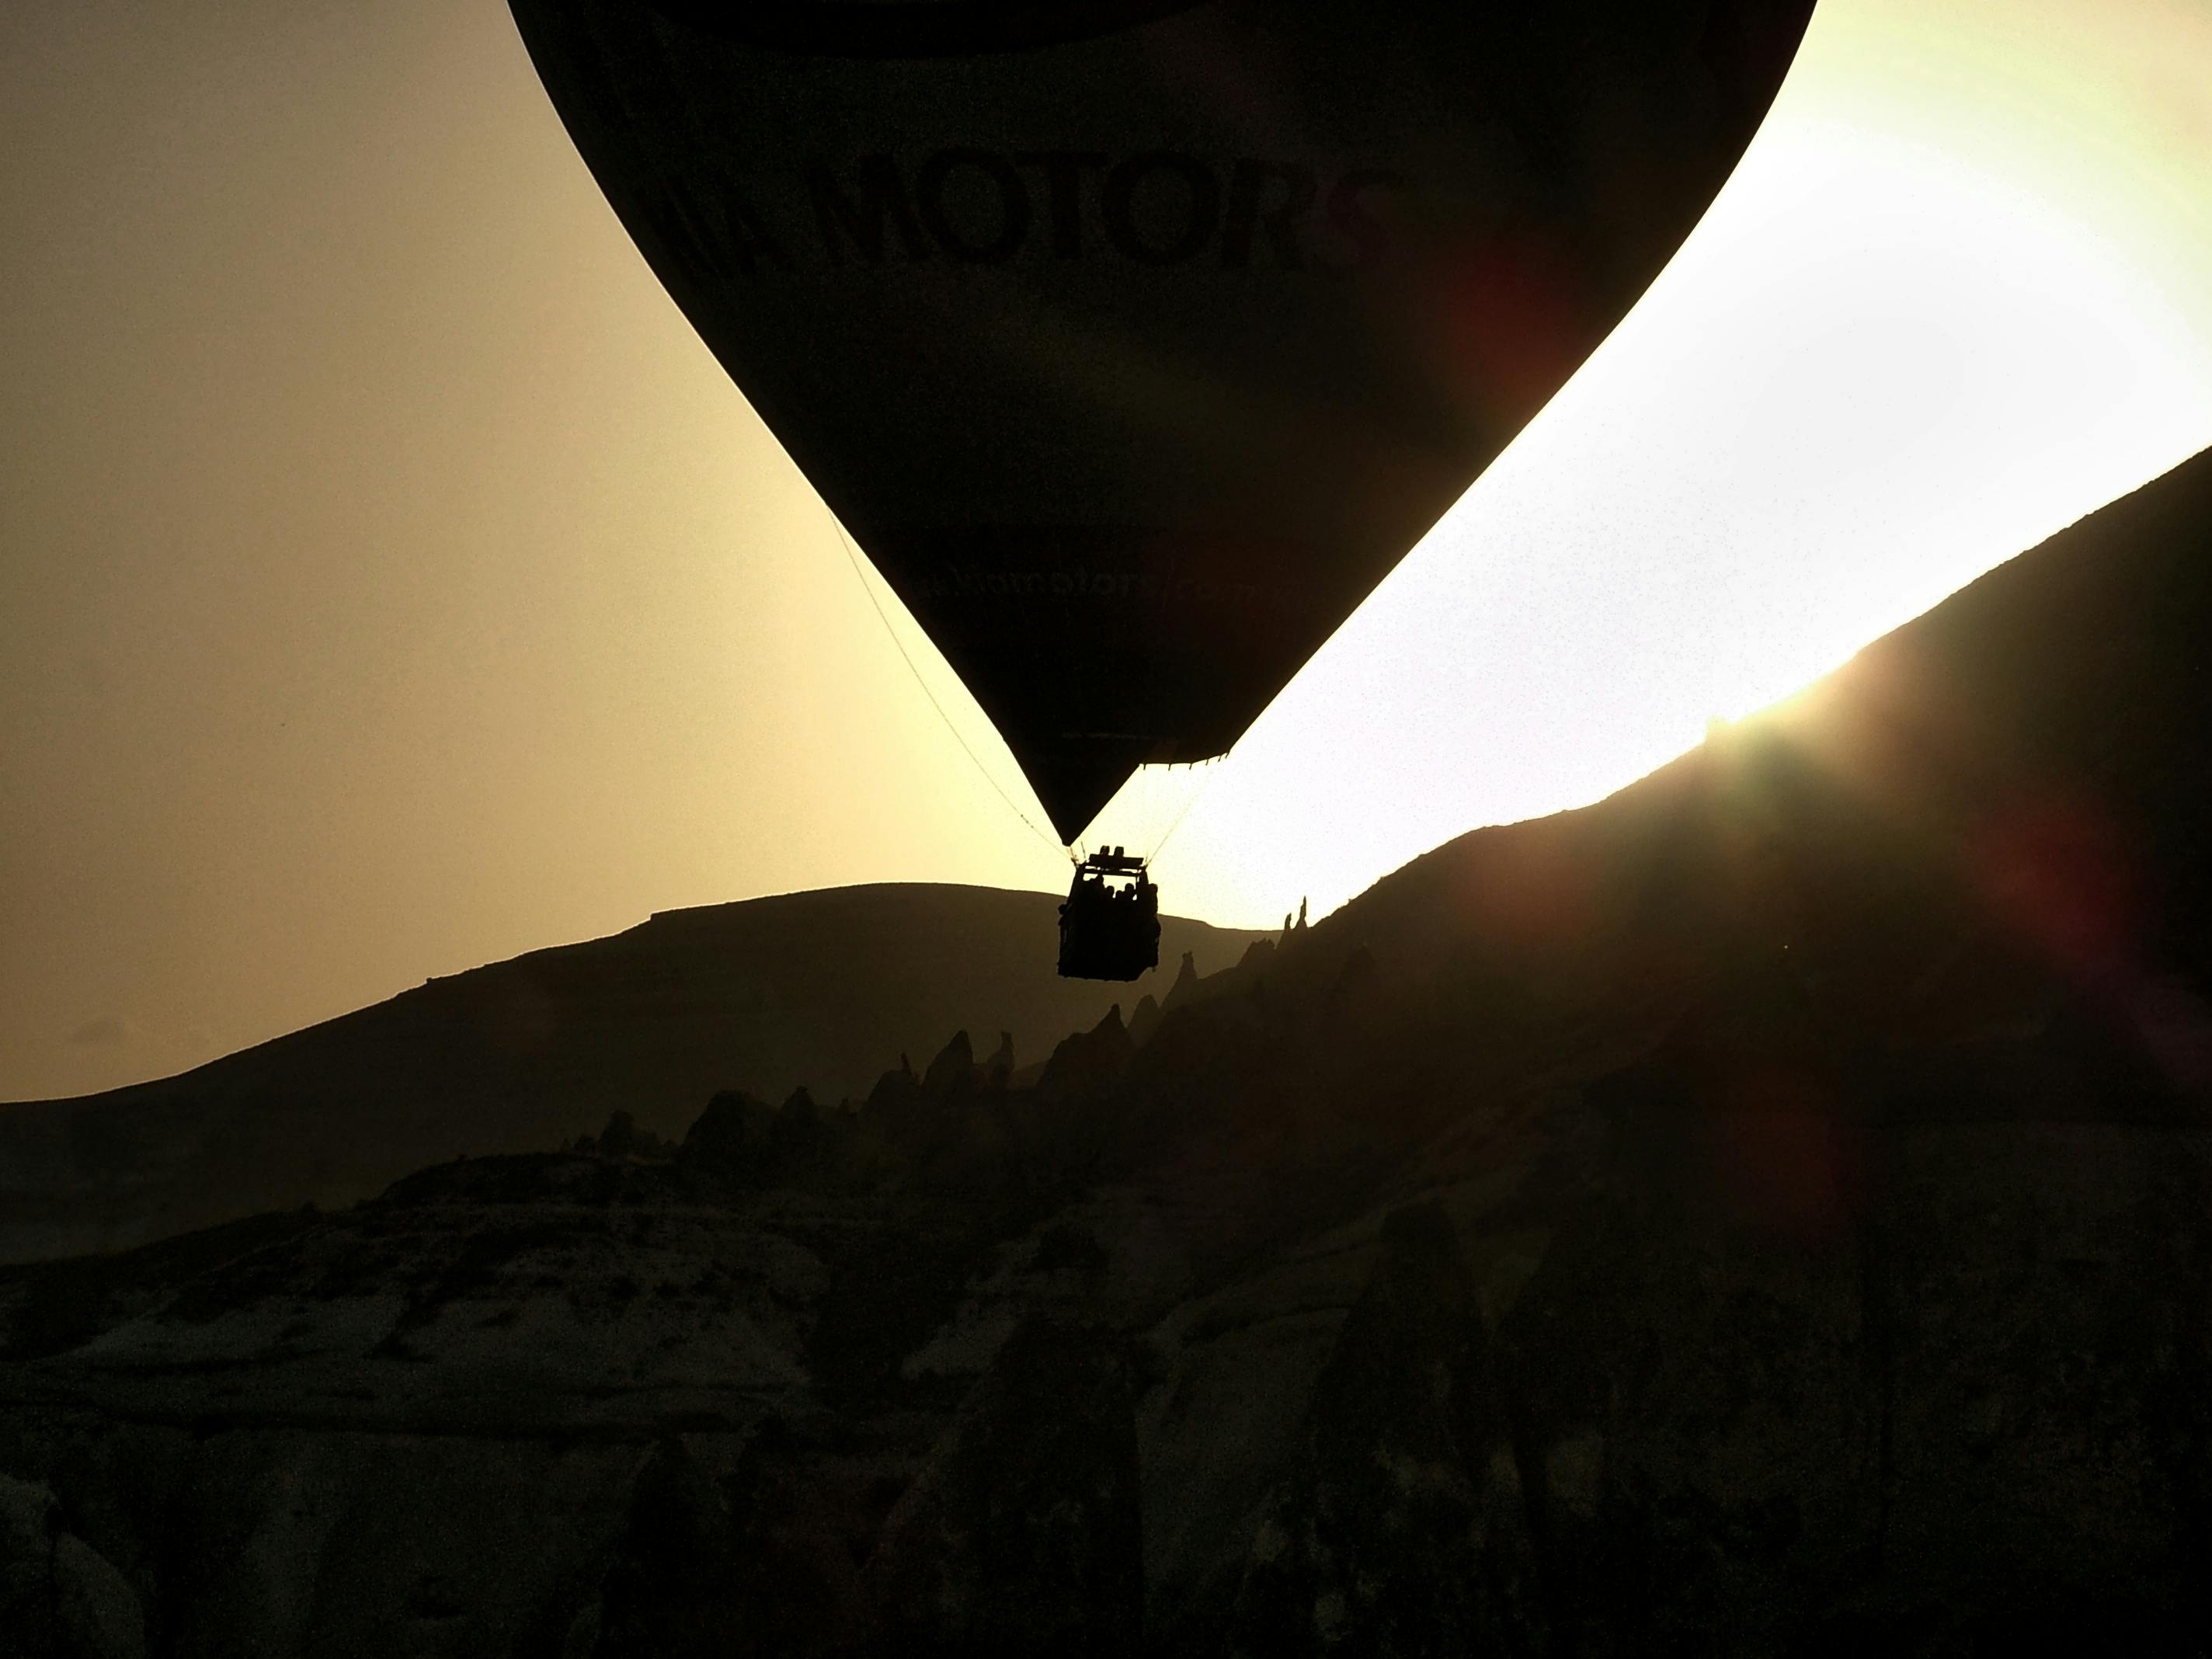 Free stock photo of hot air balloon, hot air balloons